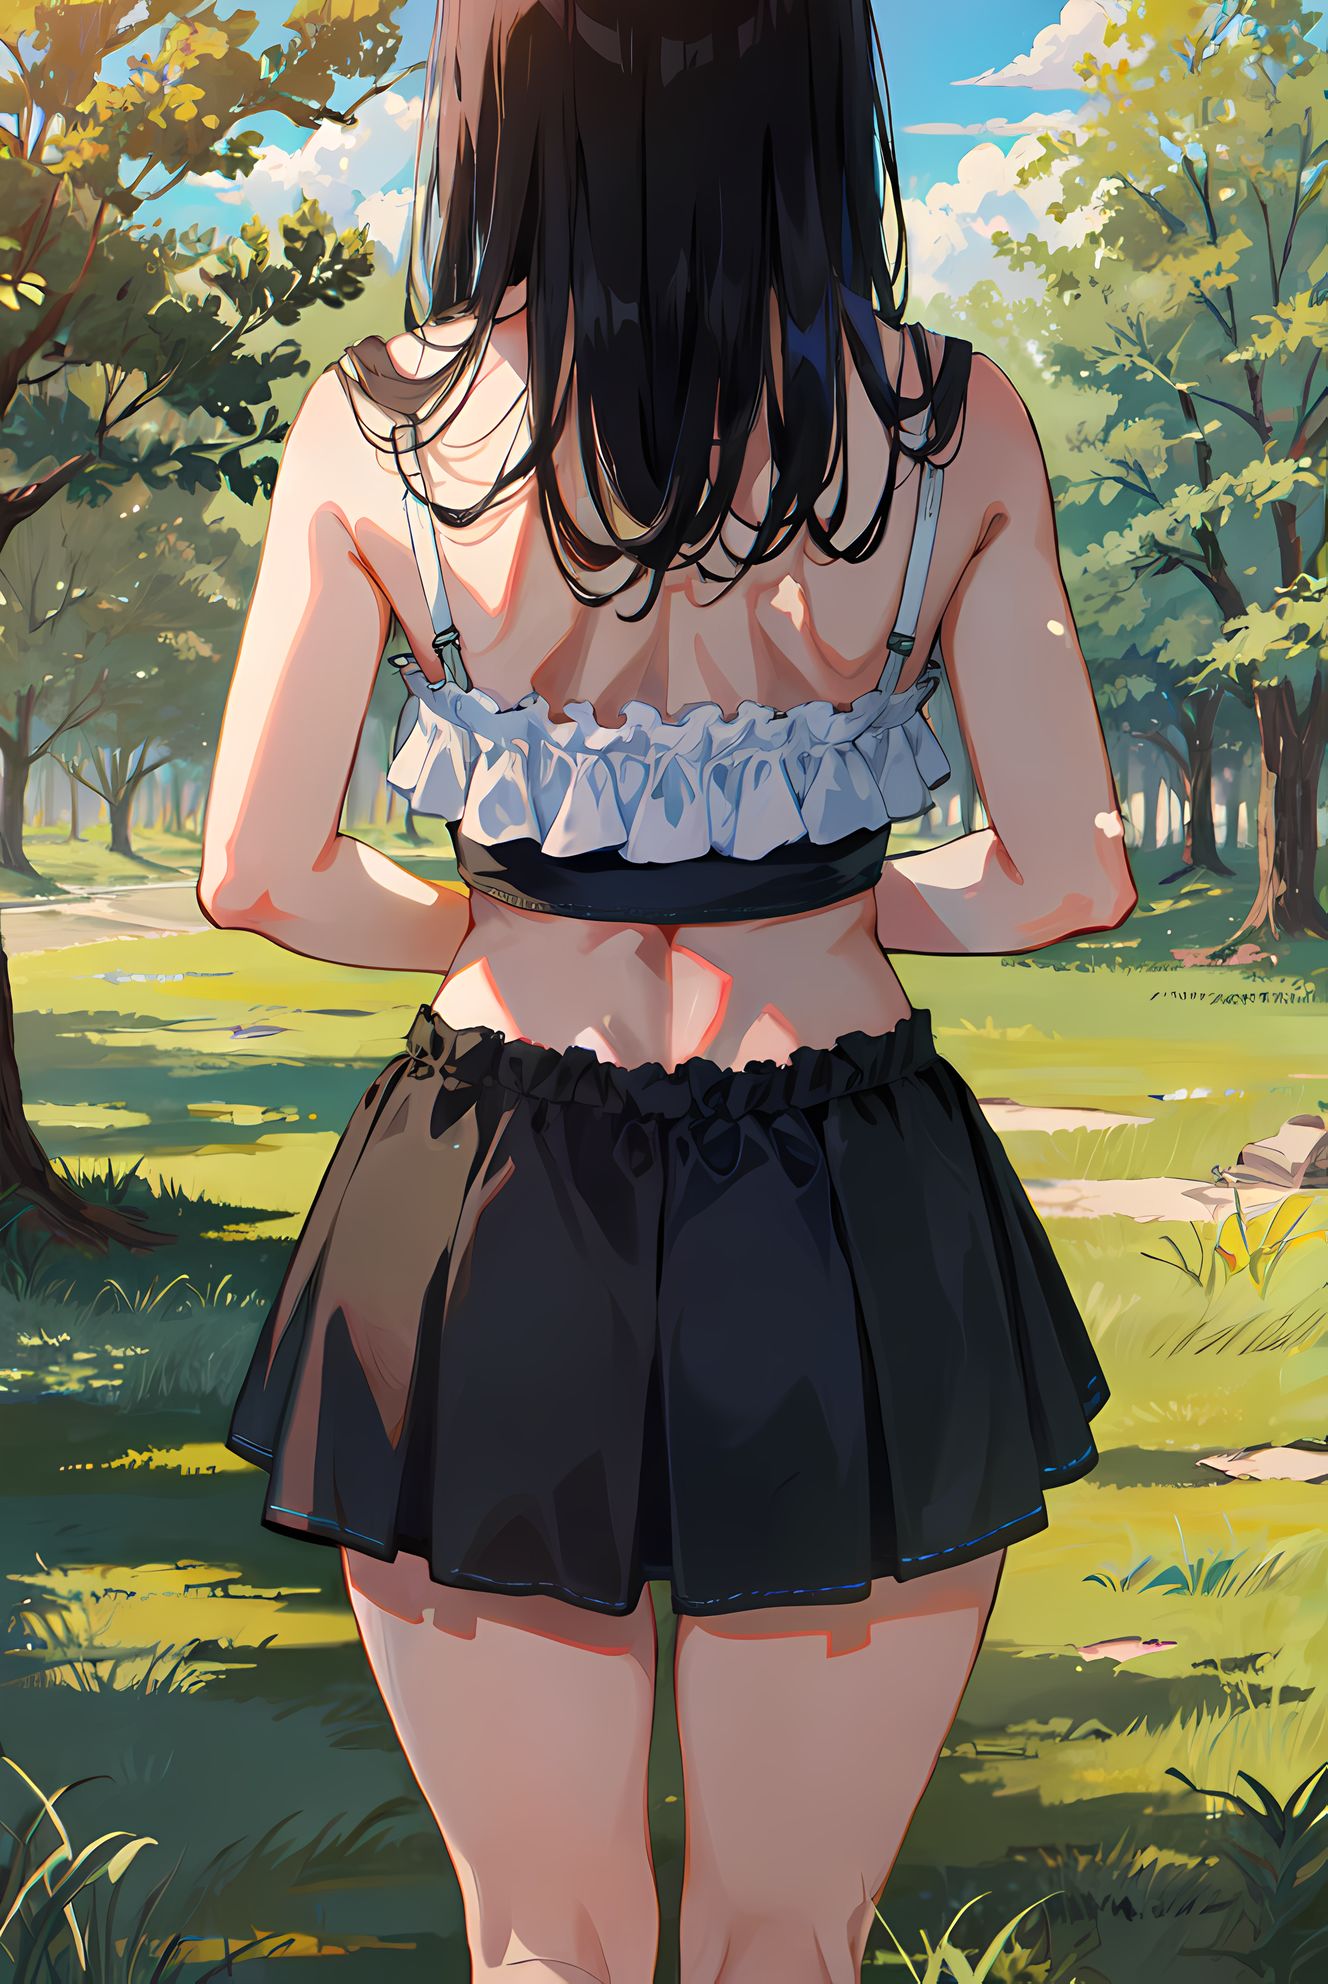 树草天空，长发少女背影下的露臂黑裙与秋叶氤氲间。插画图片壁纸